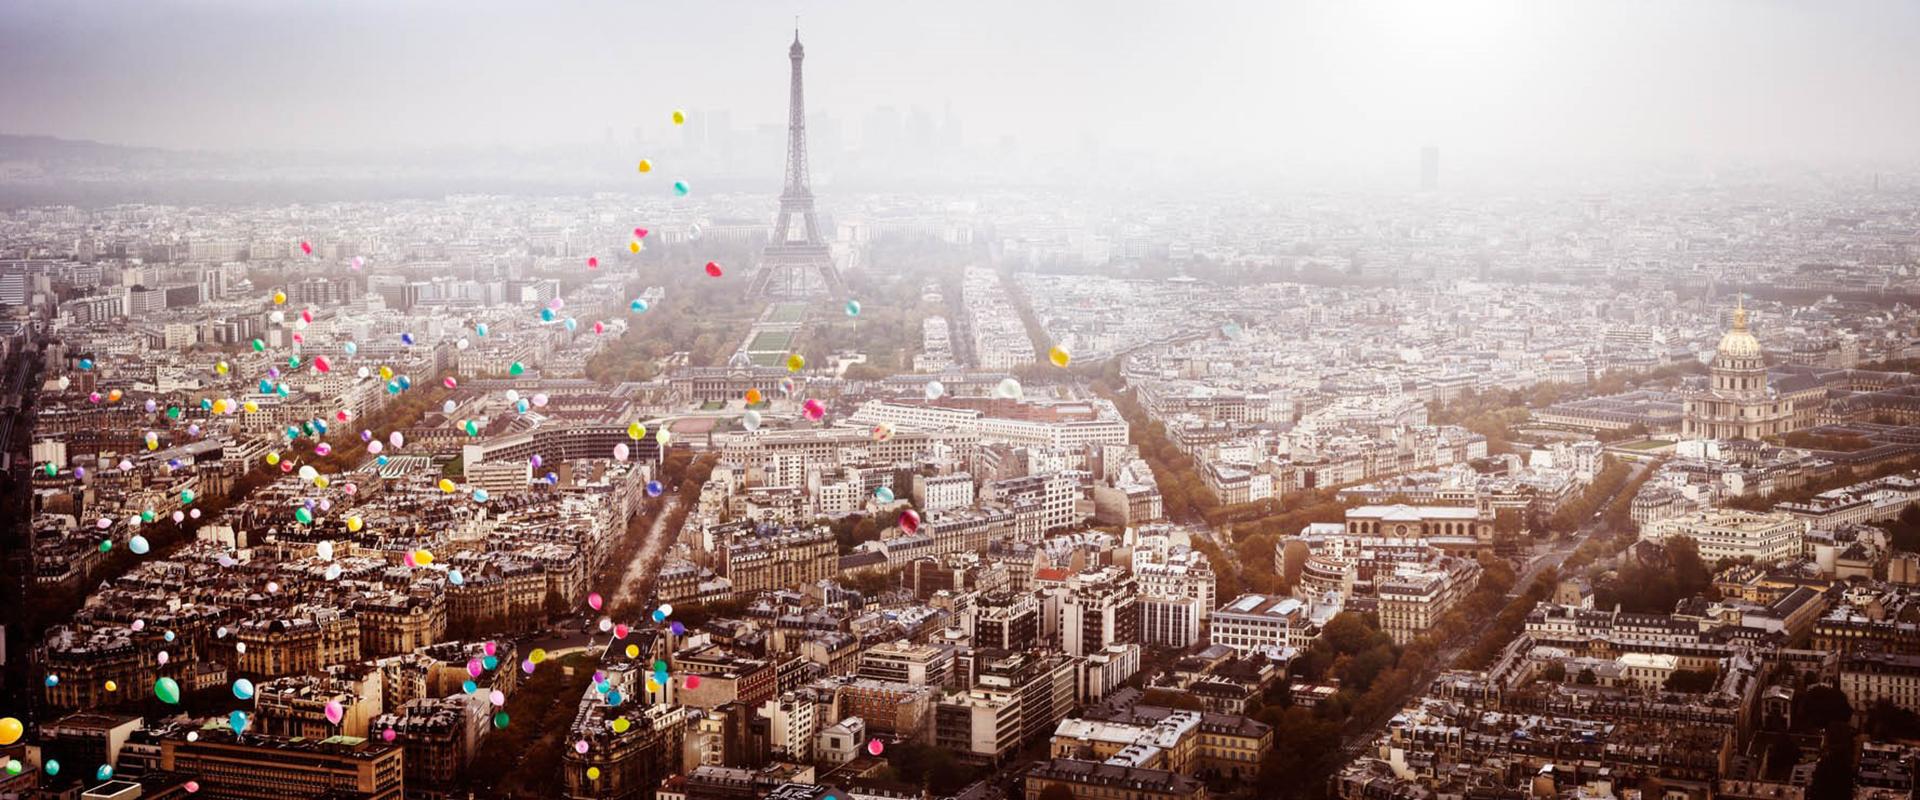 David Drebin Color Photograph - Balloons over Paris